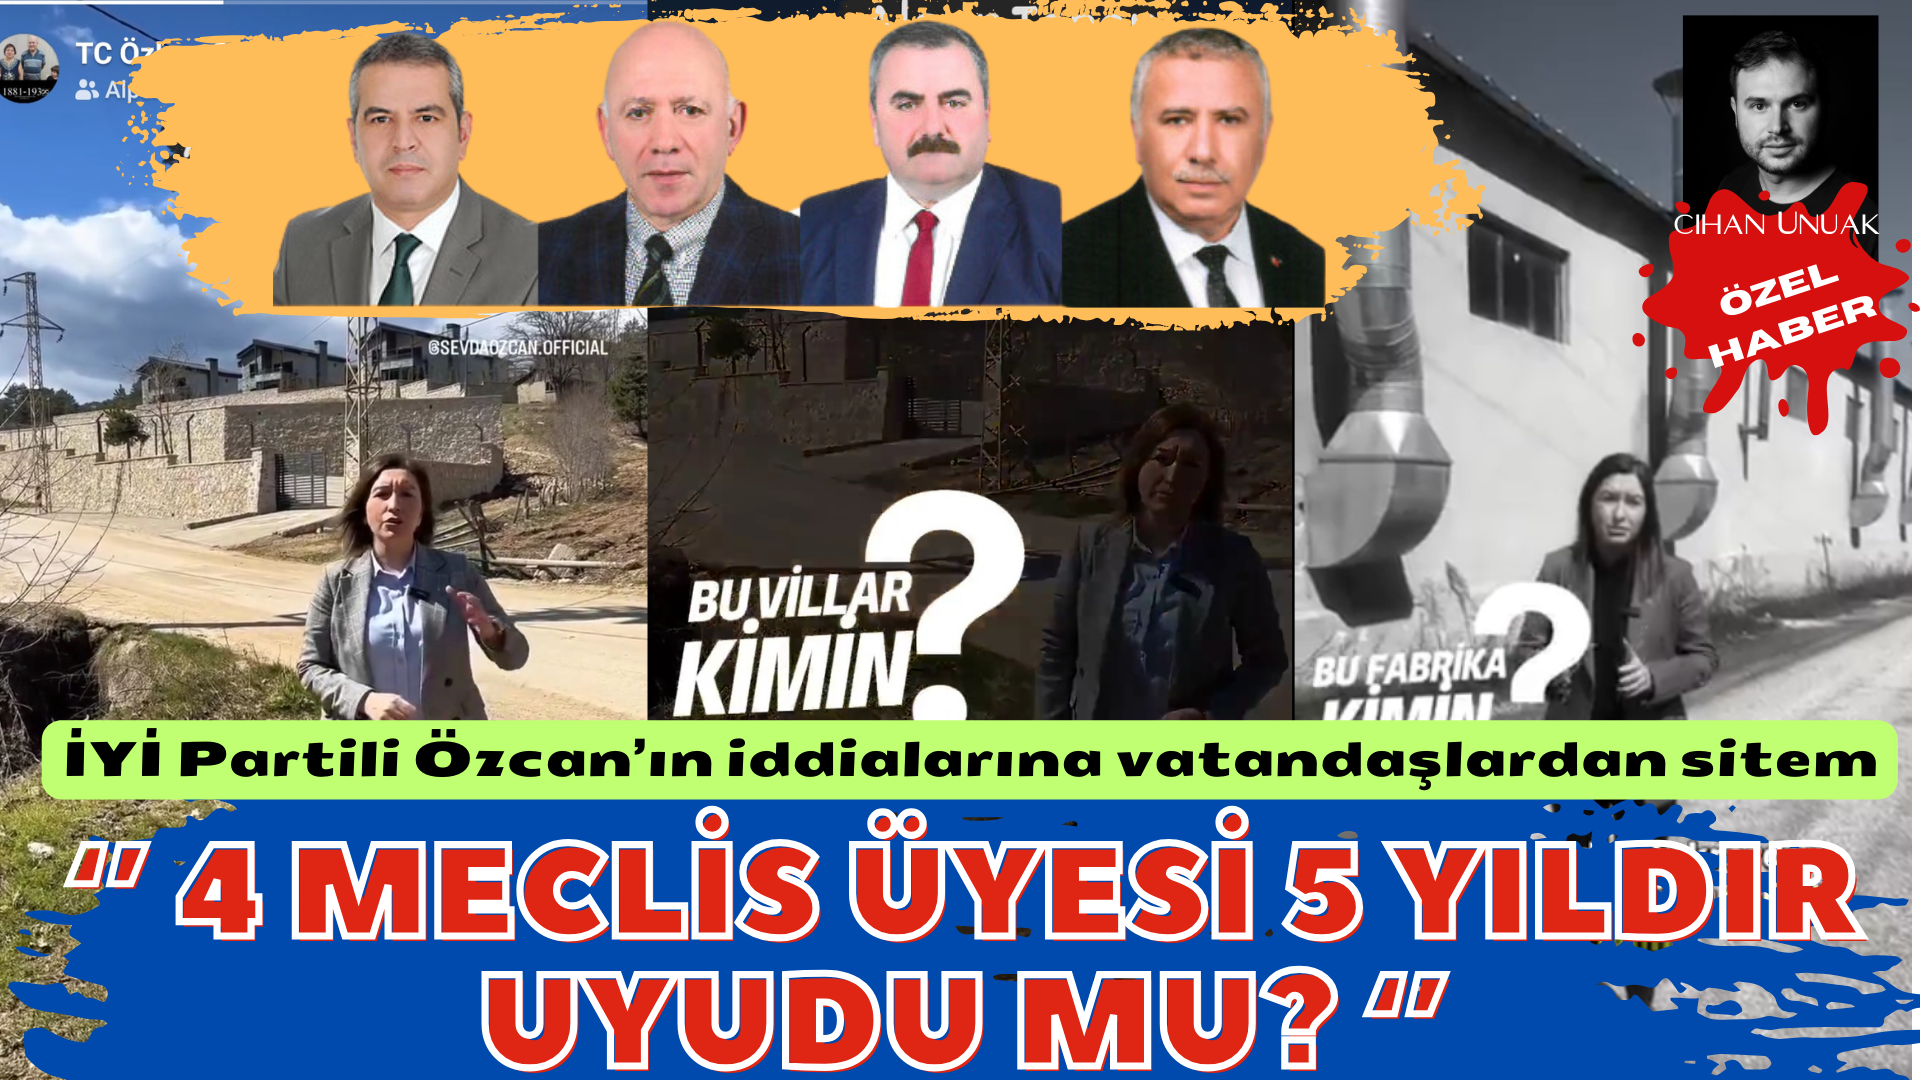 İYİ Partili Özcan’ın İddialarına Vatandaşlardan sitem: “4 İYİ Partili Meclis Üyesi 5 Yıldır Uyudu mu? ‘